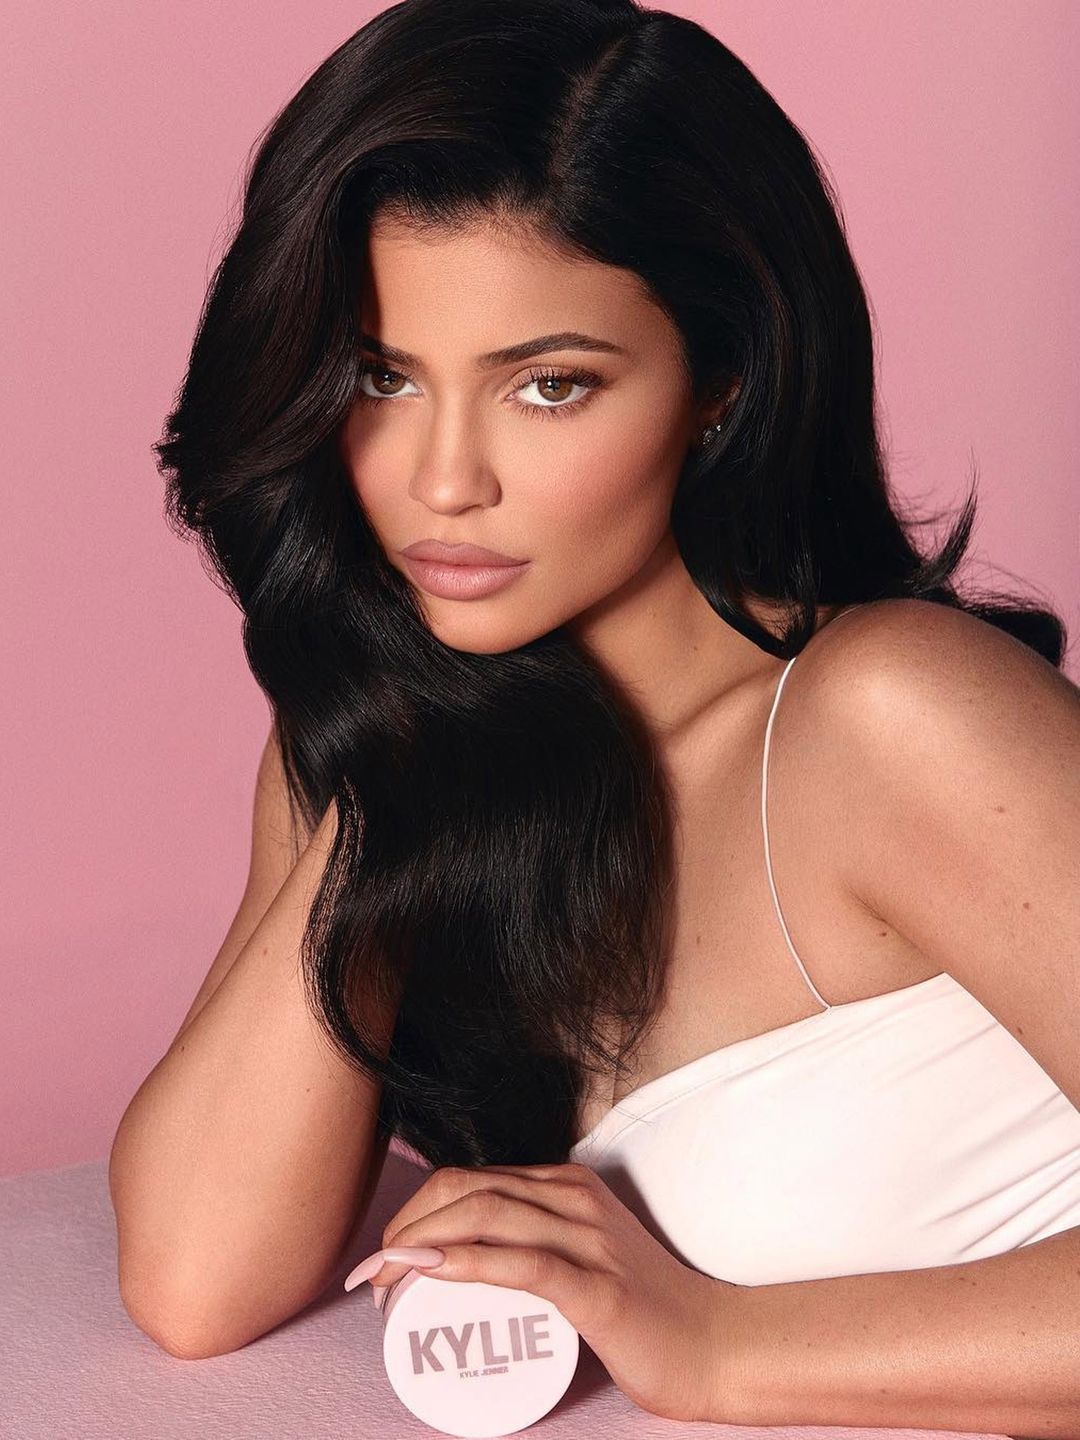 Kylie Jenner ethnicity